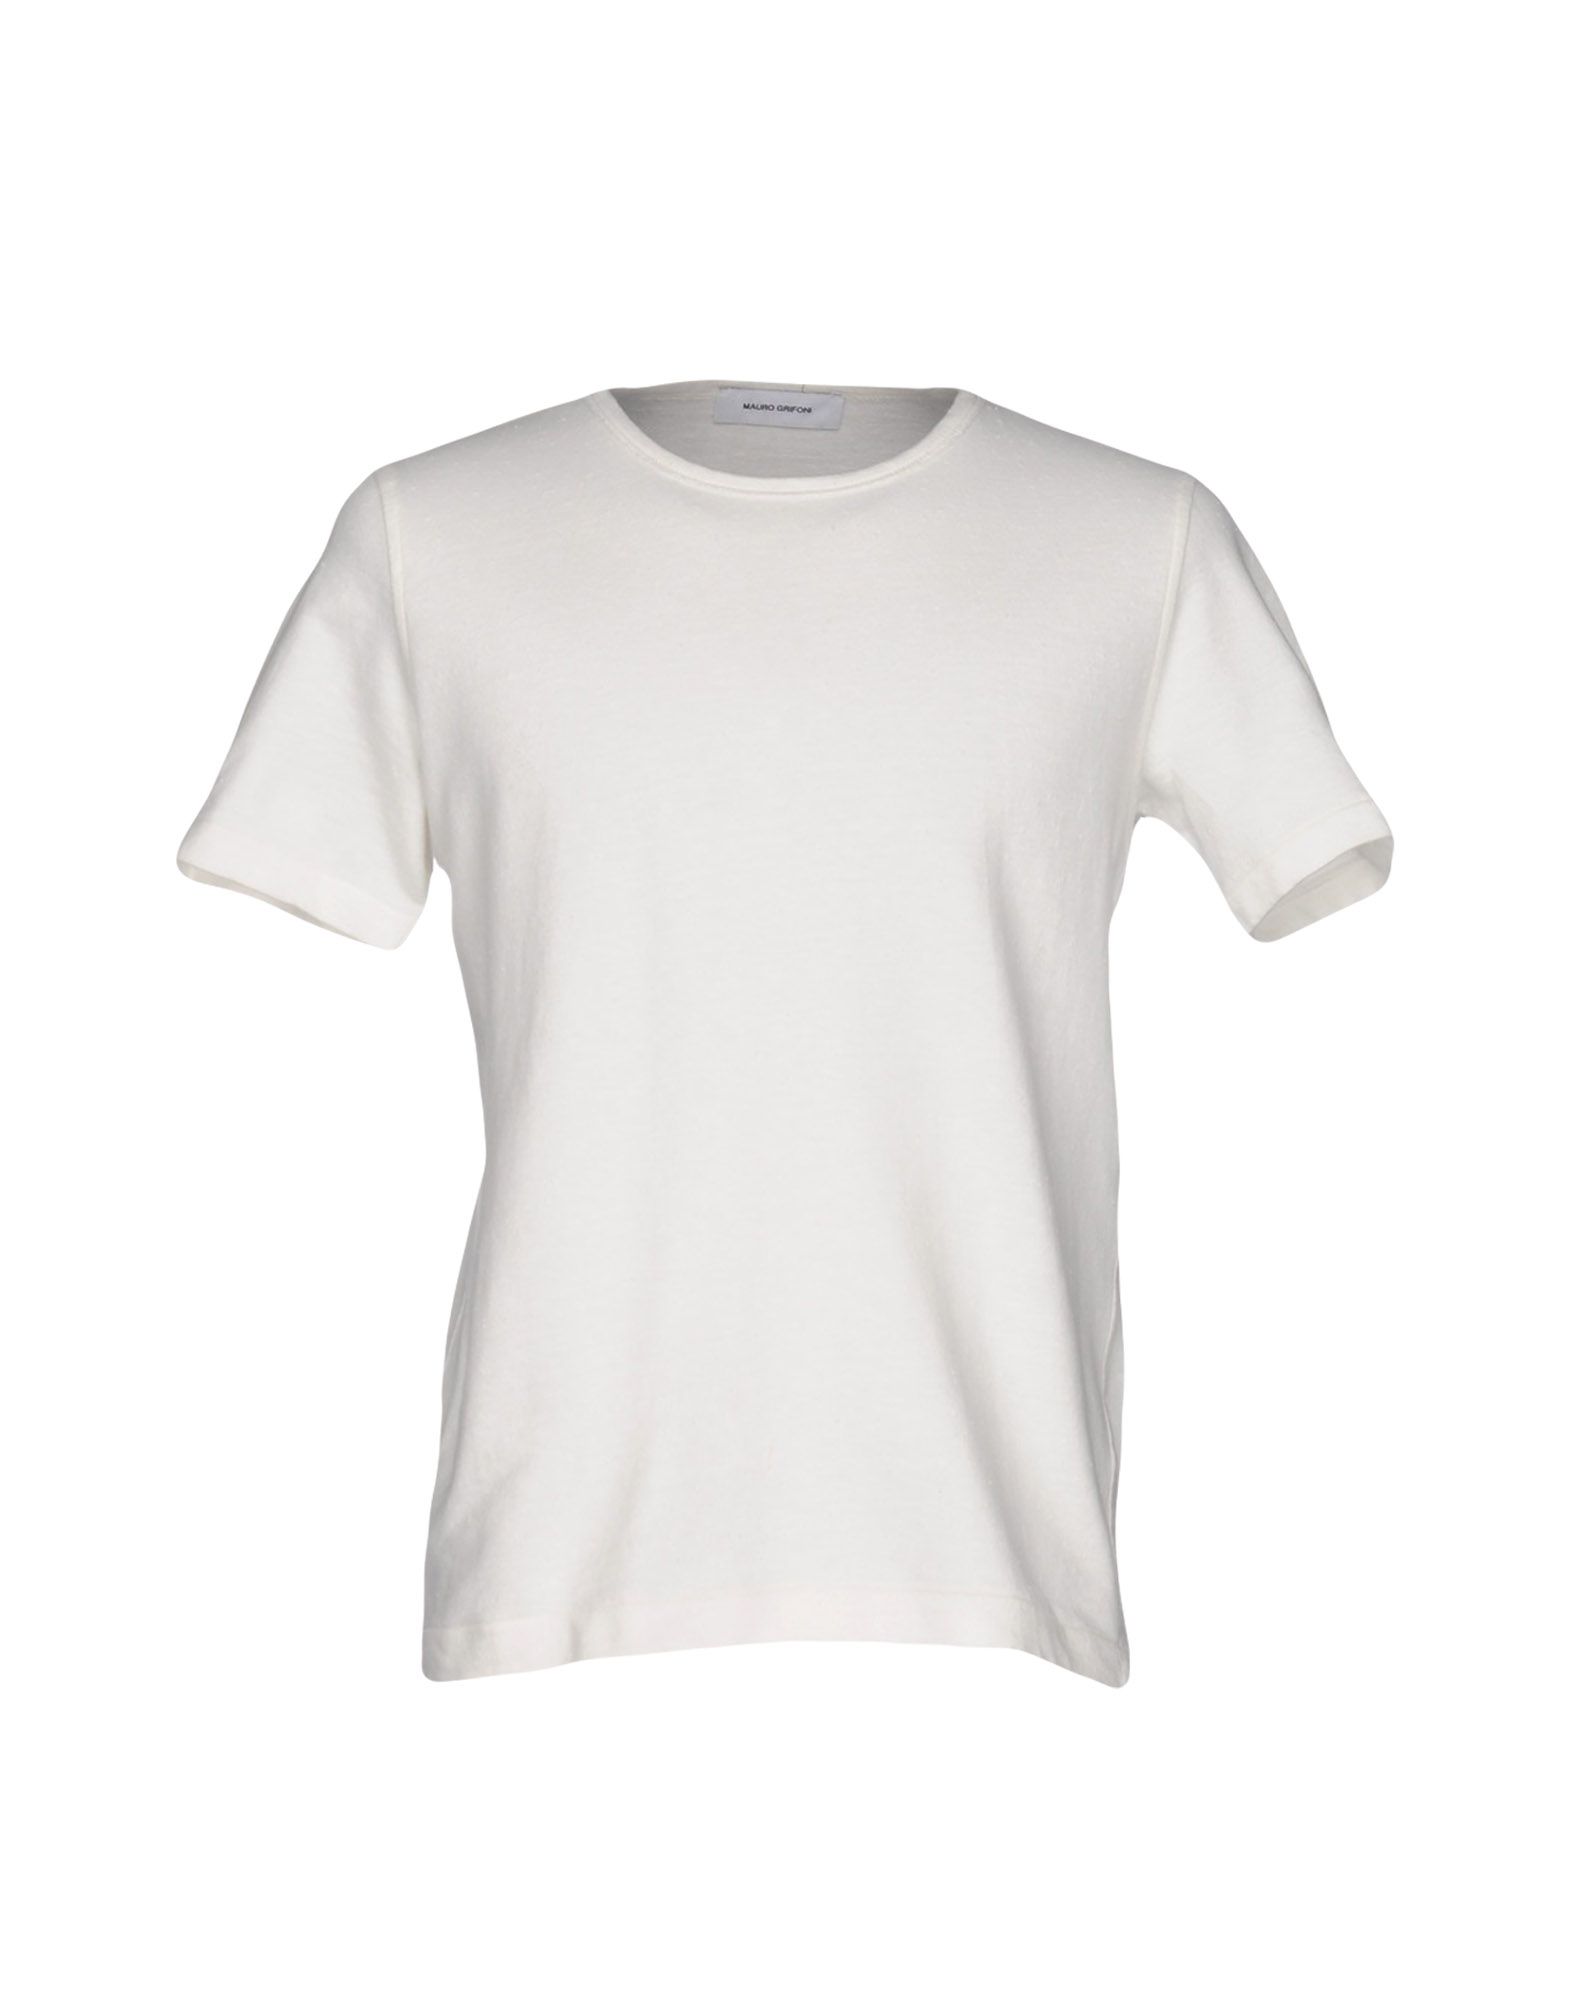 《送料無料》MAURO GRIFONI メンズ スウェットシャツ ホワイト L コットン 100%